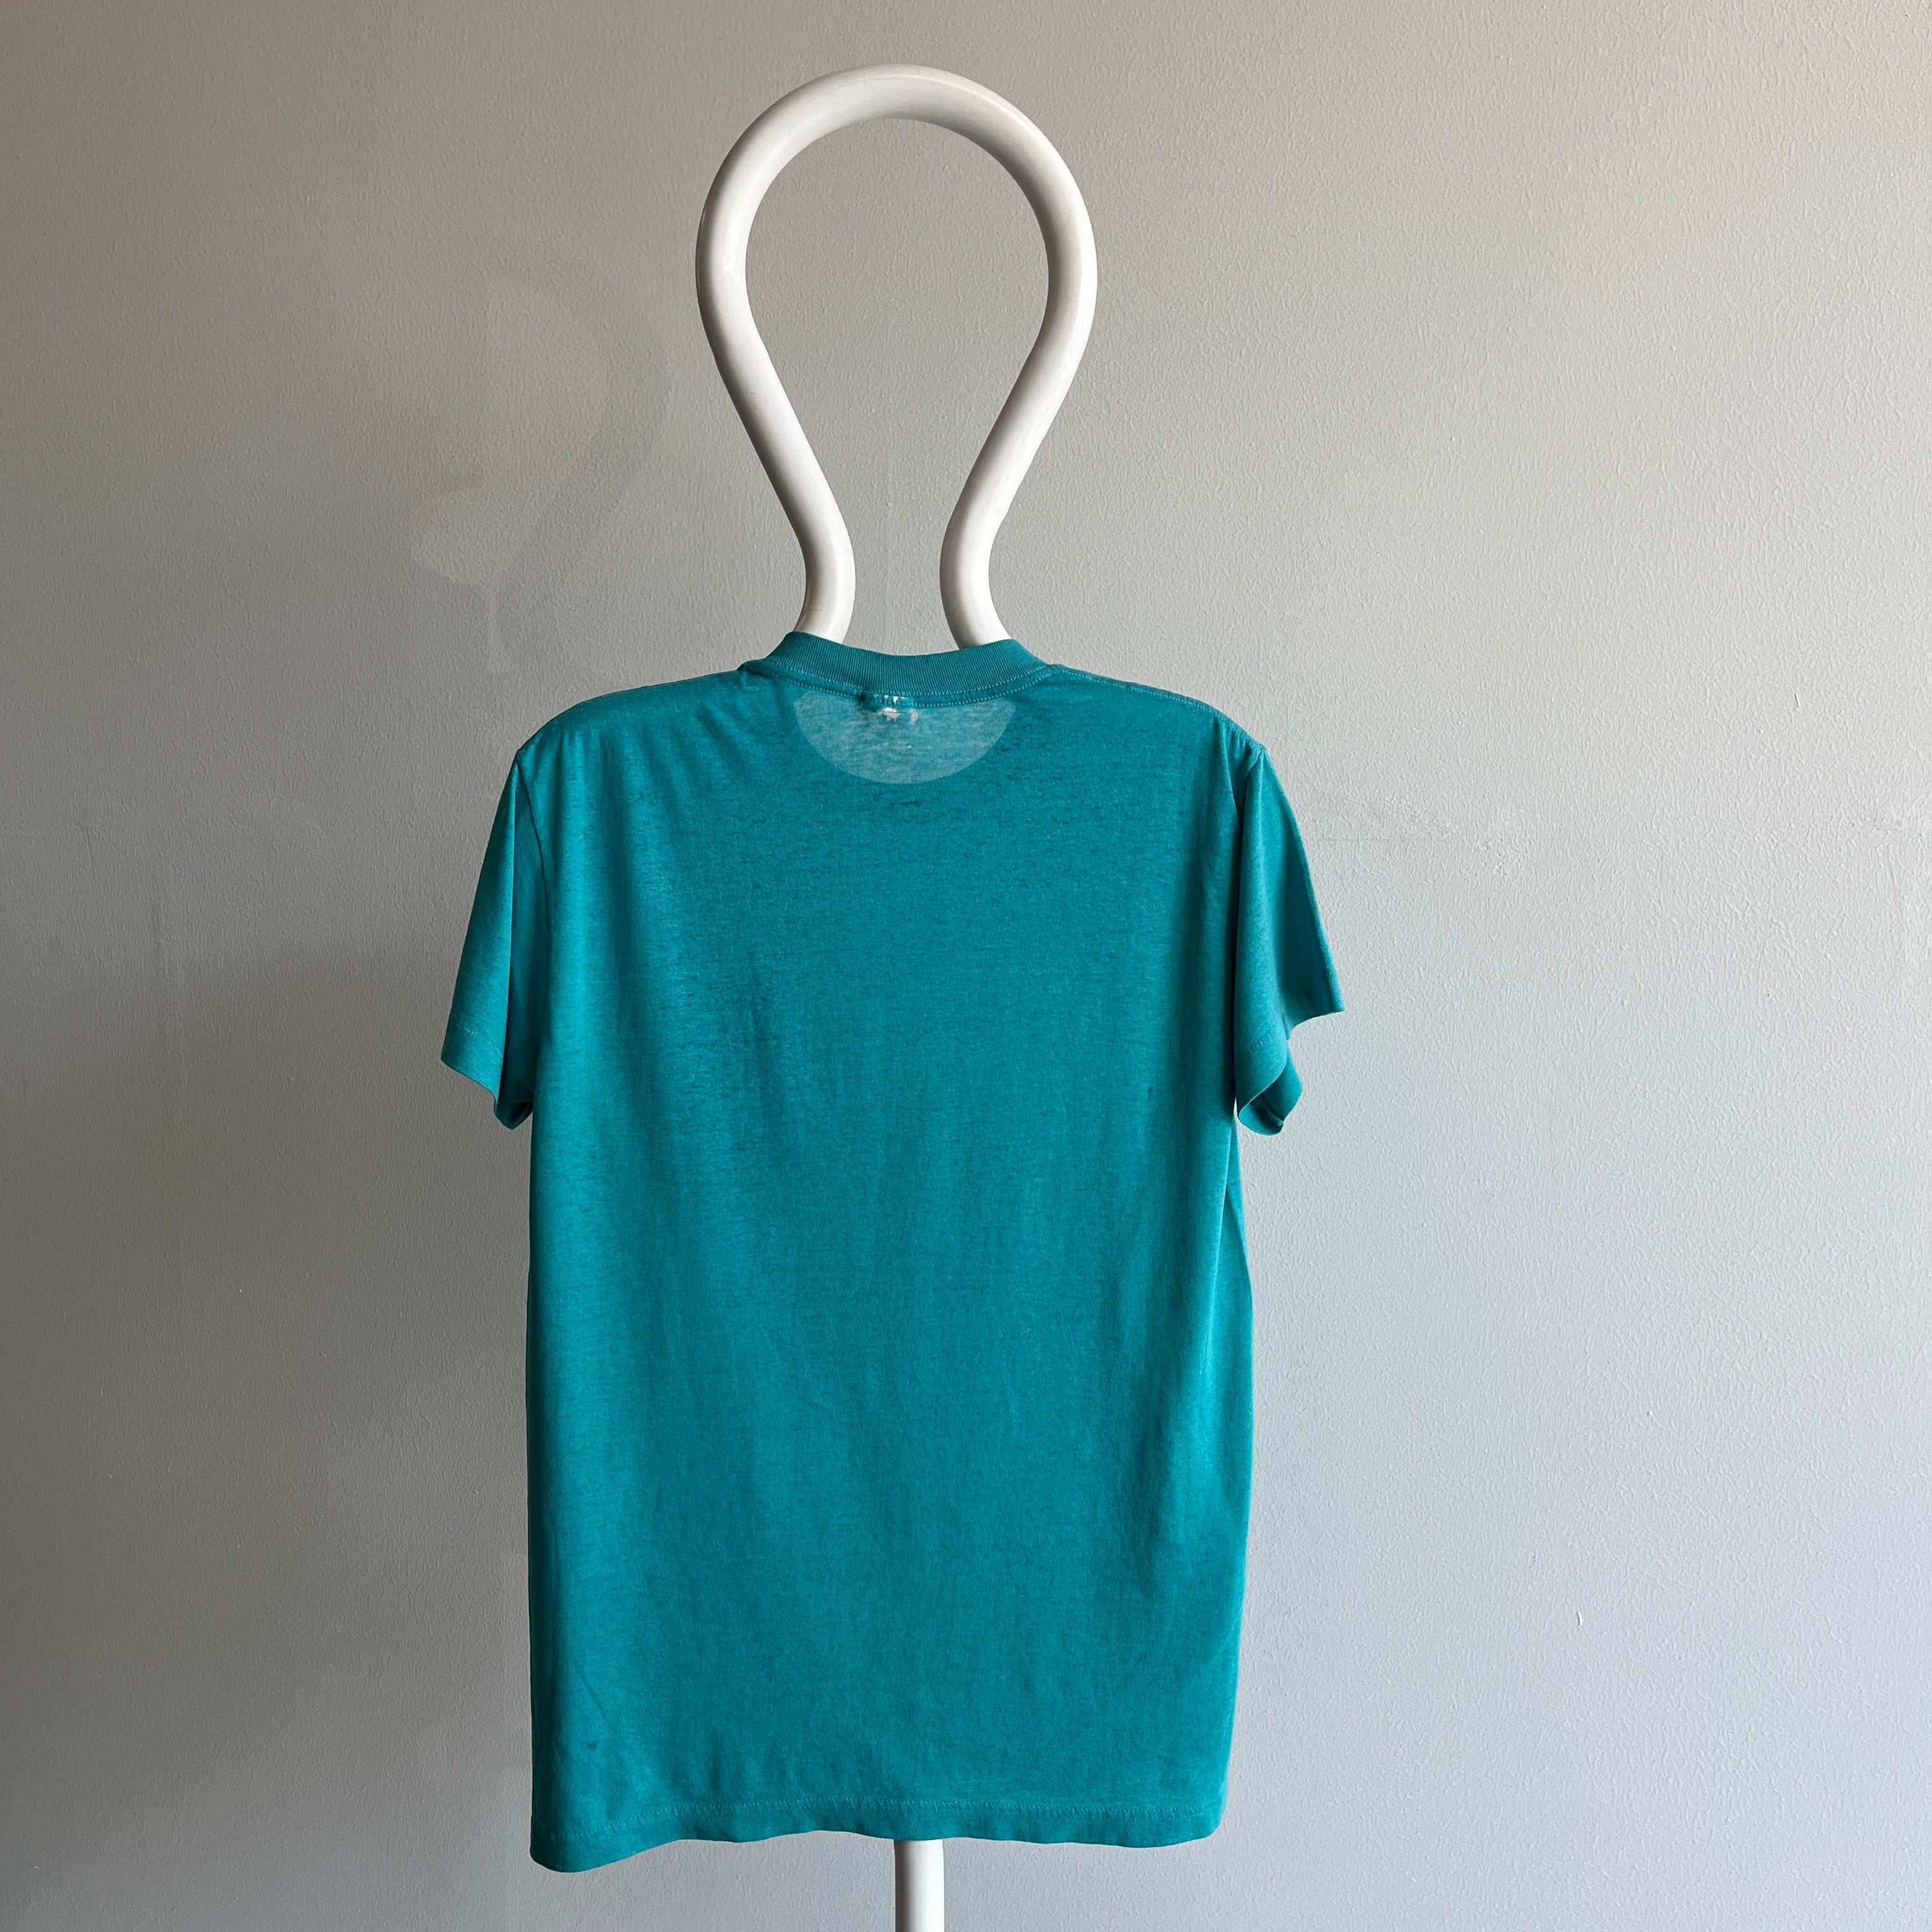 1980s Paper Thin Teal Pocket T-Shirt (la marque)